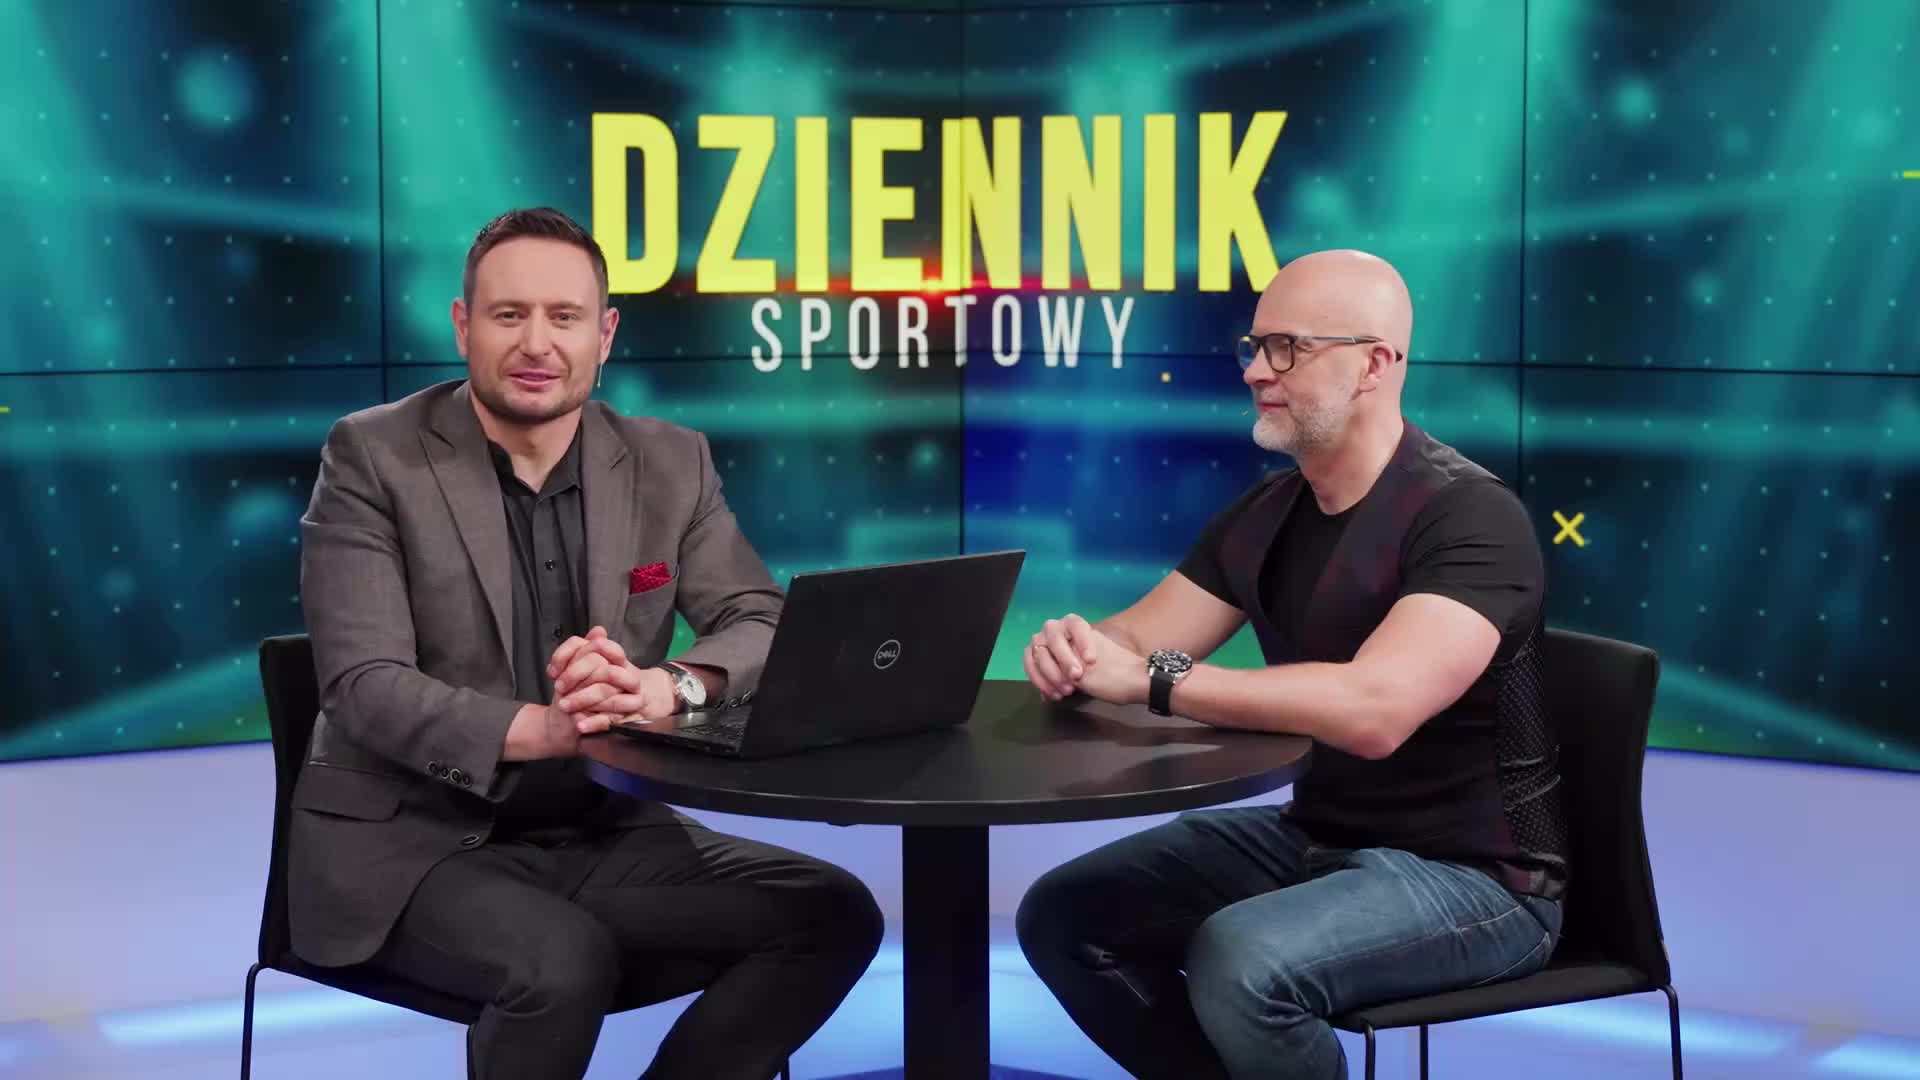 Photo for video Dziennik Sportowy